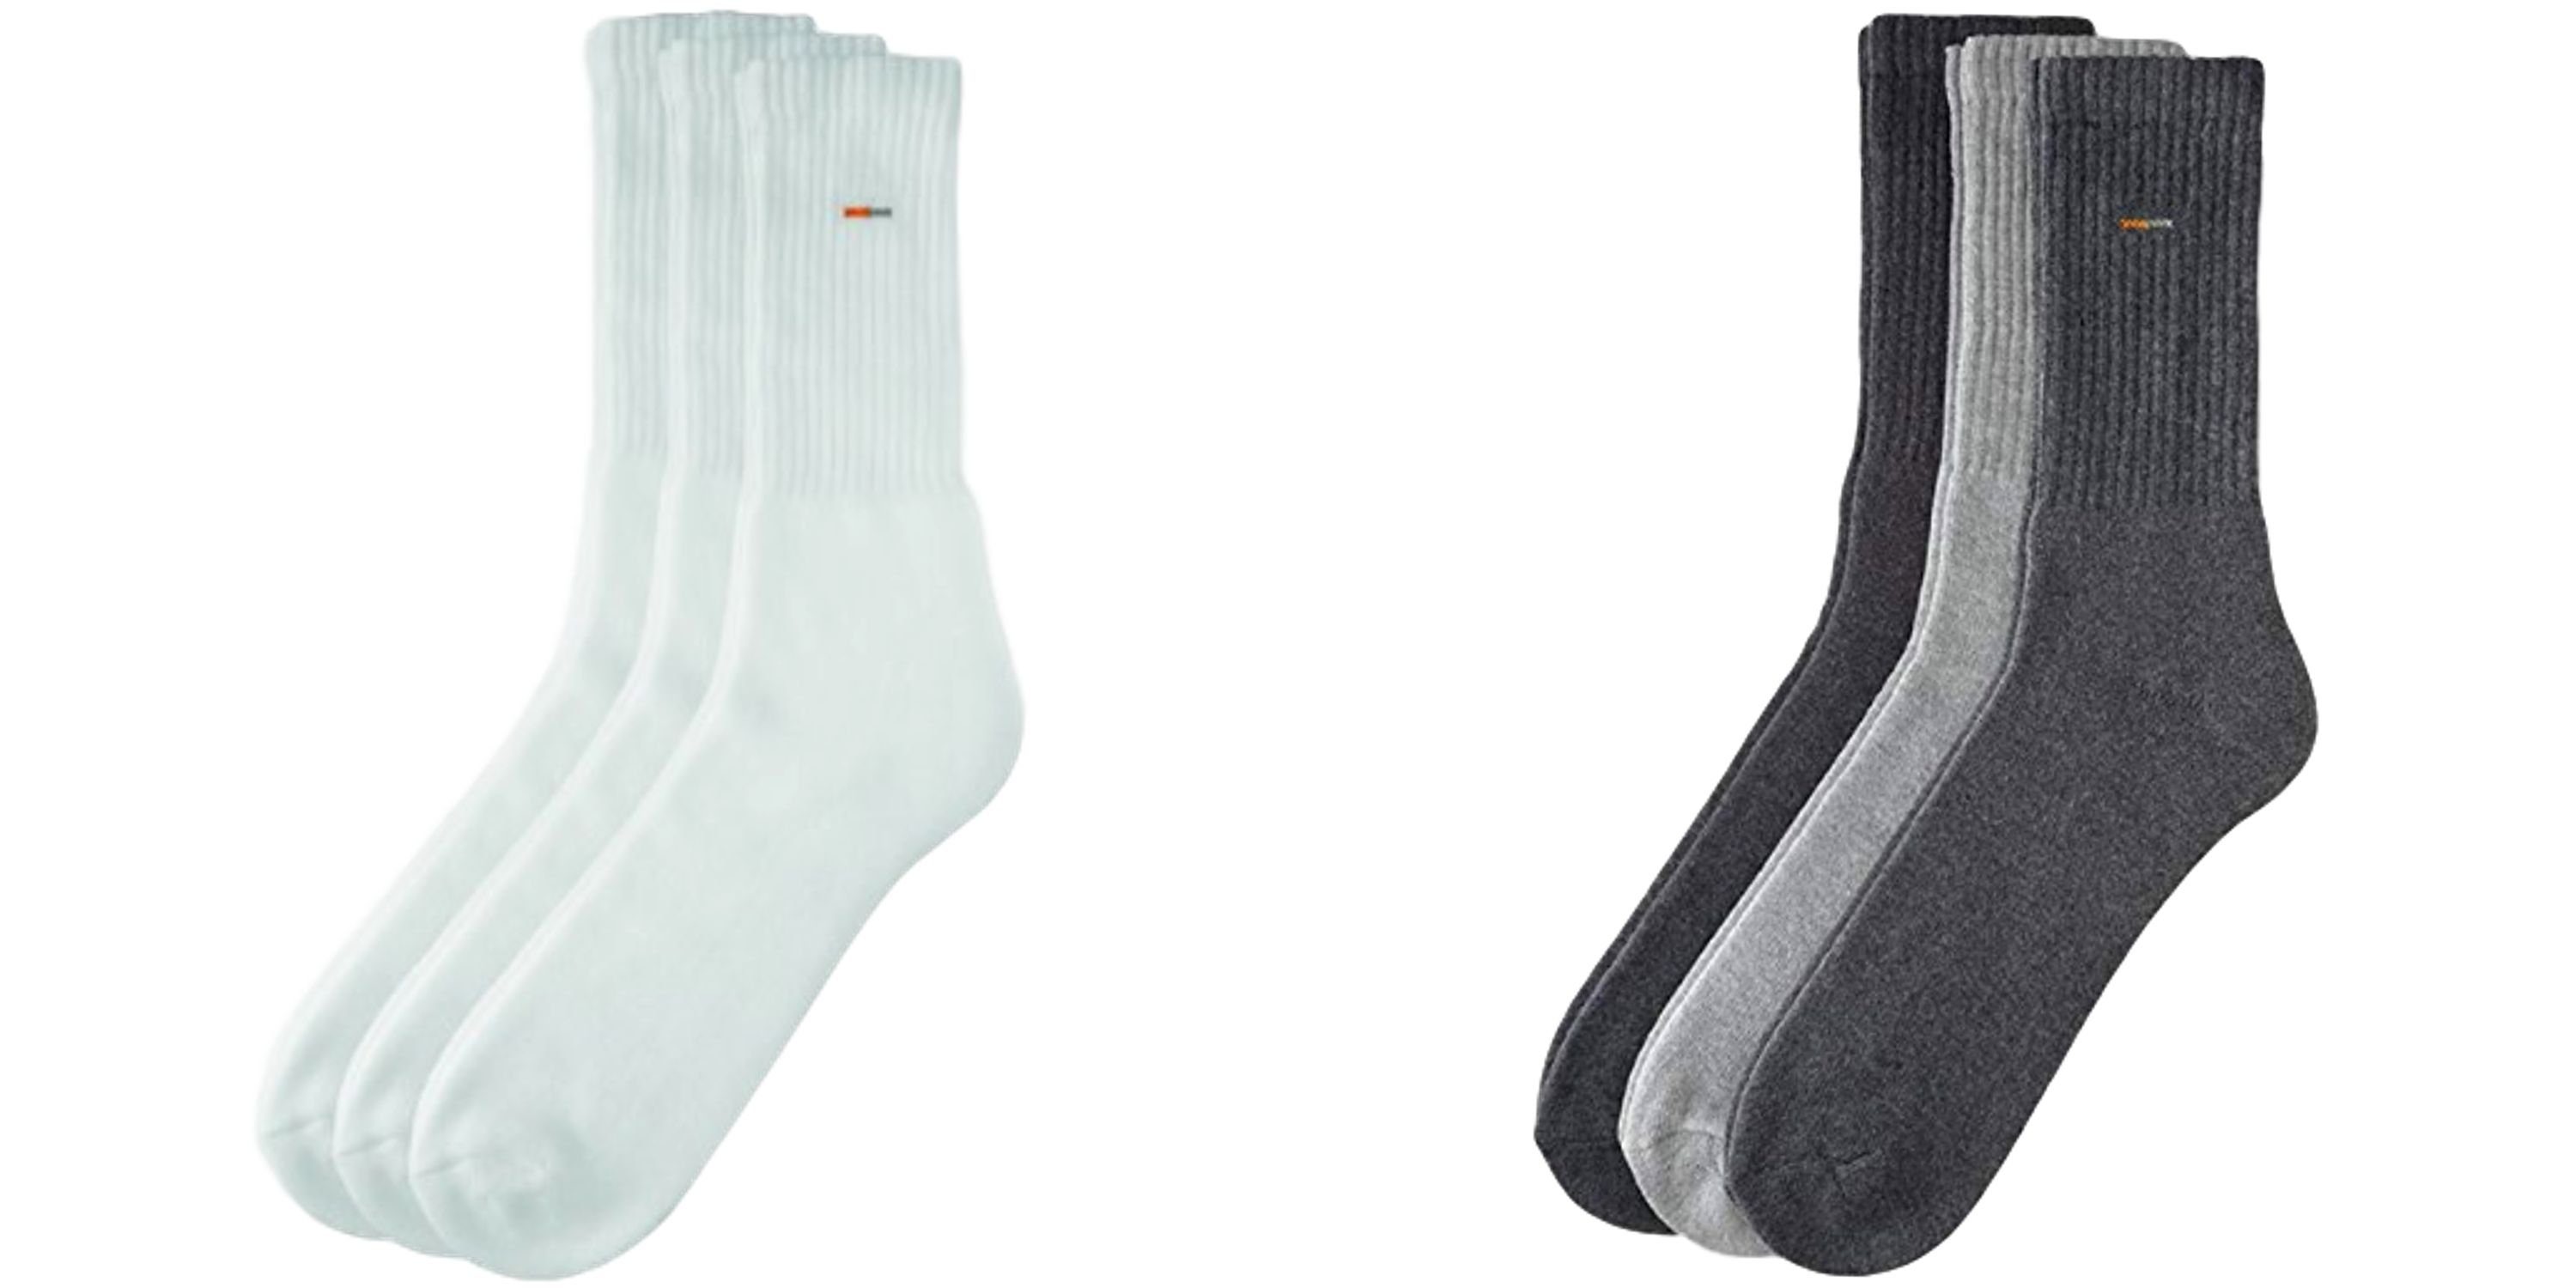 Camano Sportsocken Basic Socken Sportsocke (3-Paar) - Farbe: 3 Paar weiss 3 Paar bunt - Größe: 35 - 38 A12 3 Paar weiss 3 Paar bunt